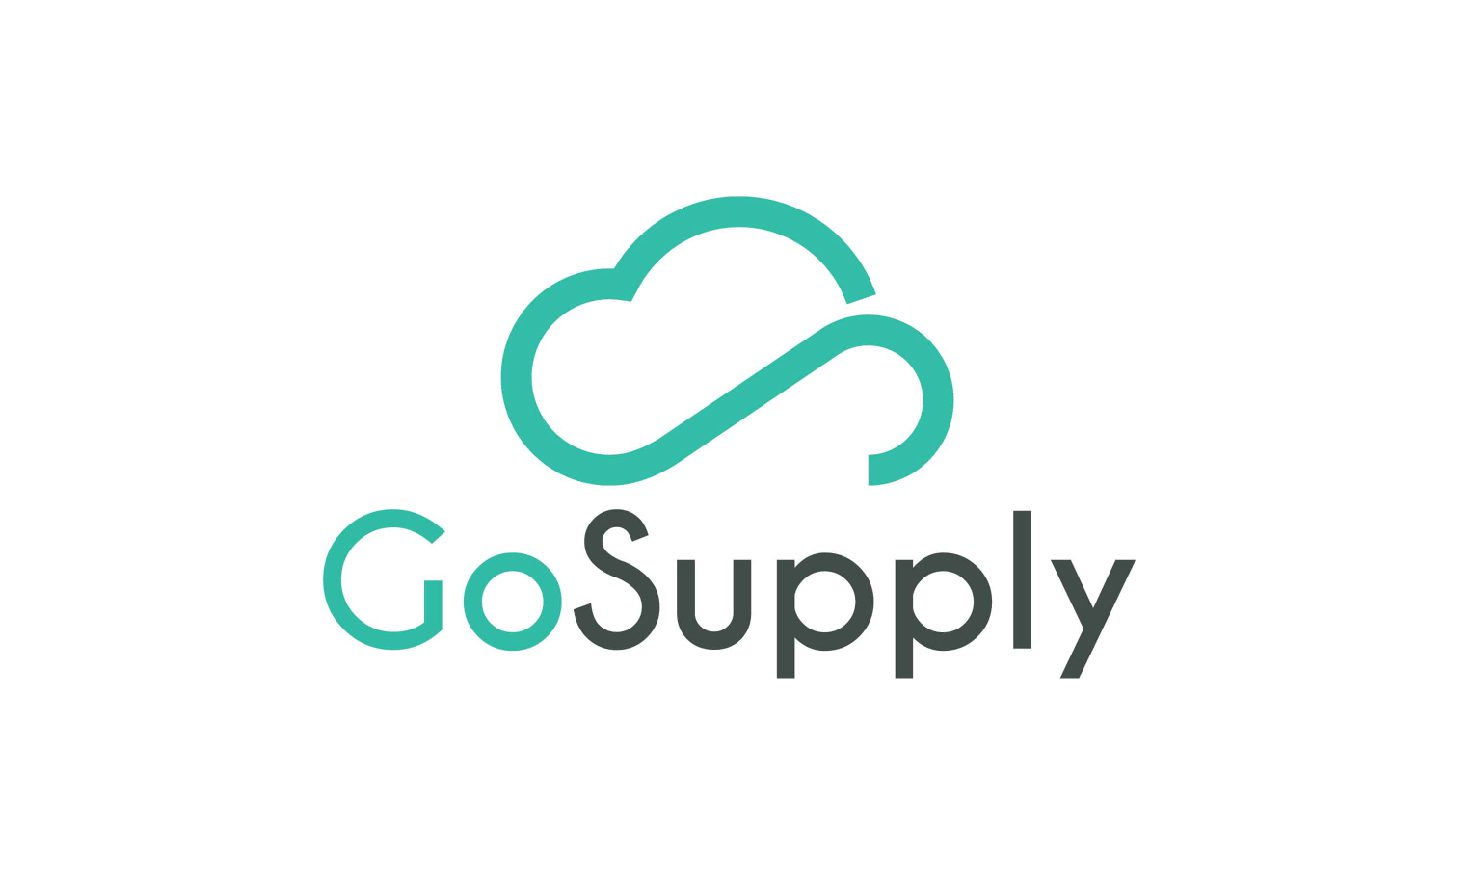 Gosupply logo